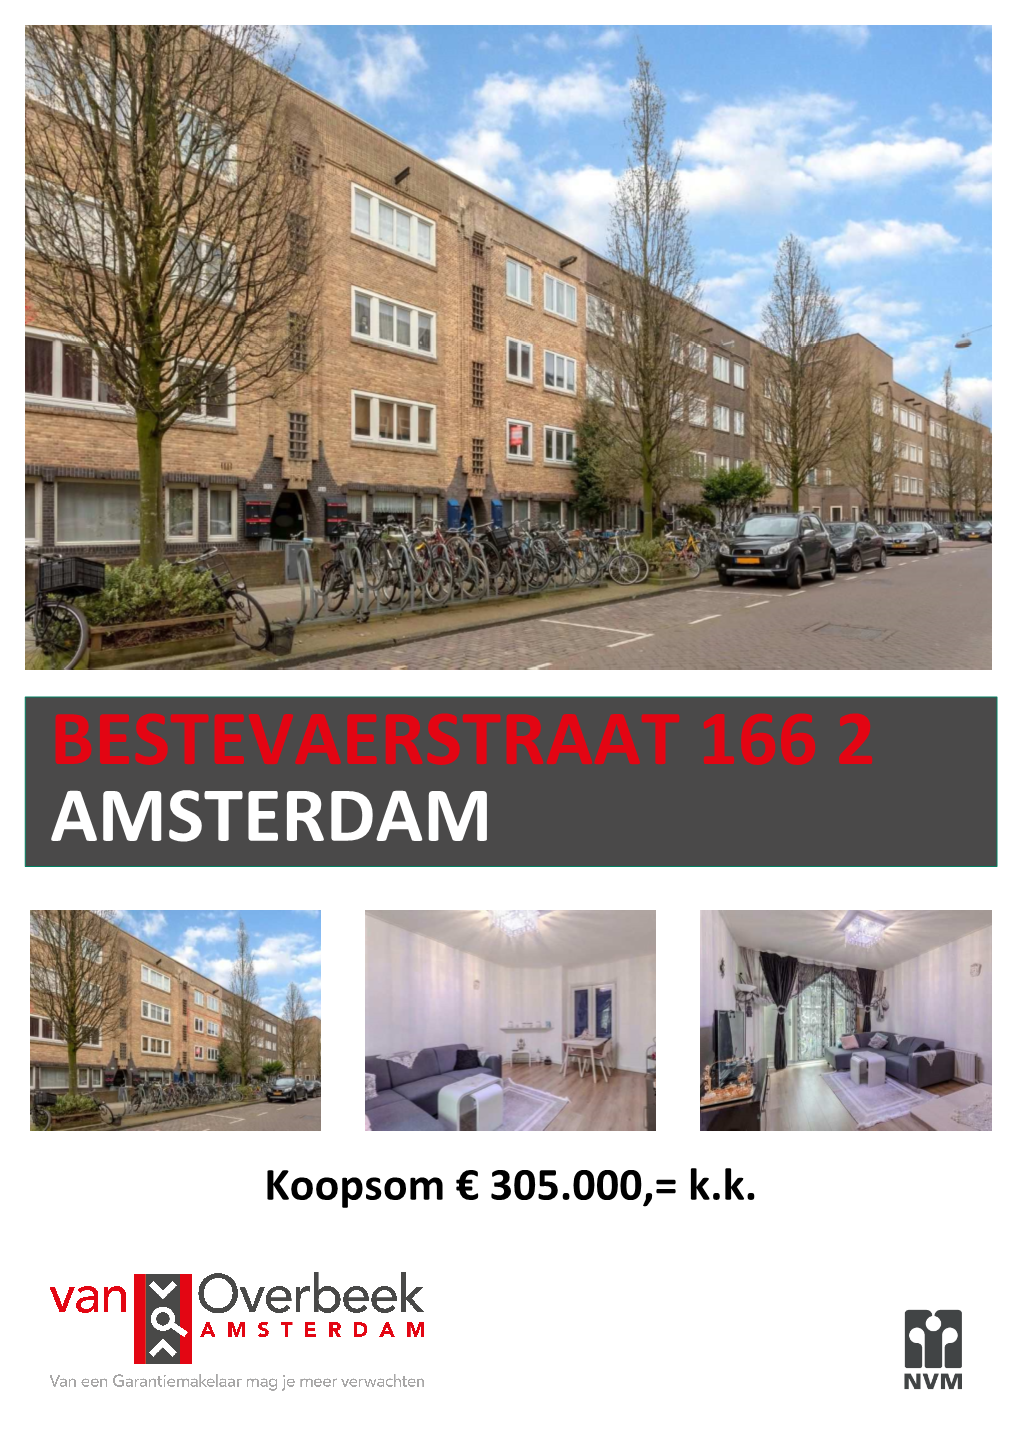 Bestevaerstraat 166 2 Amsterdam